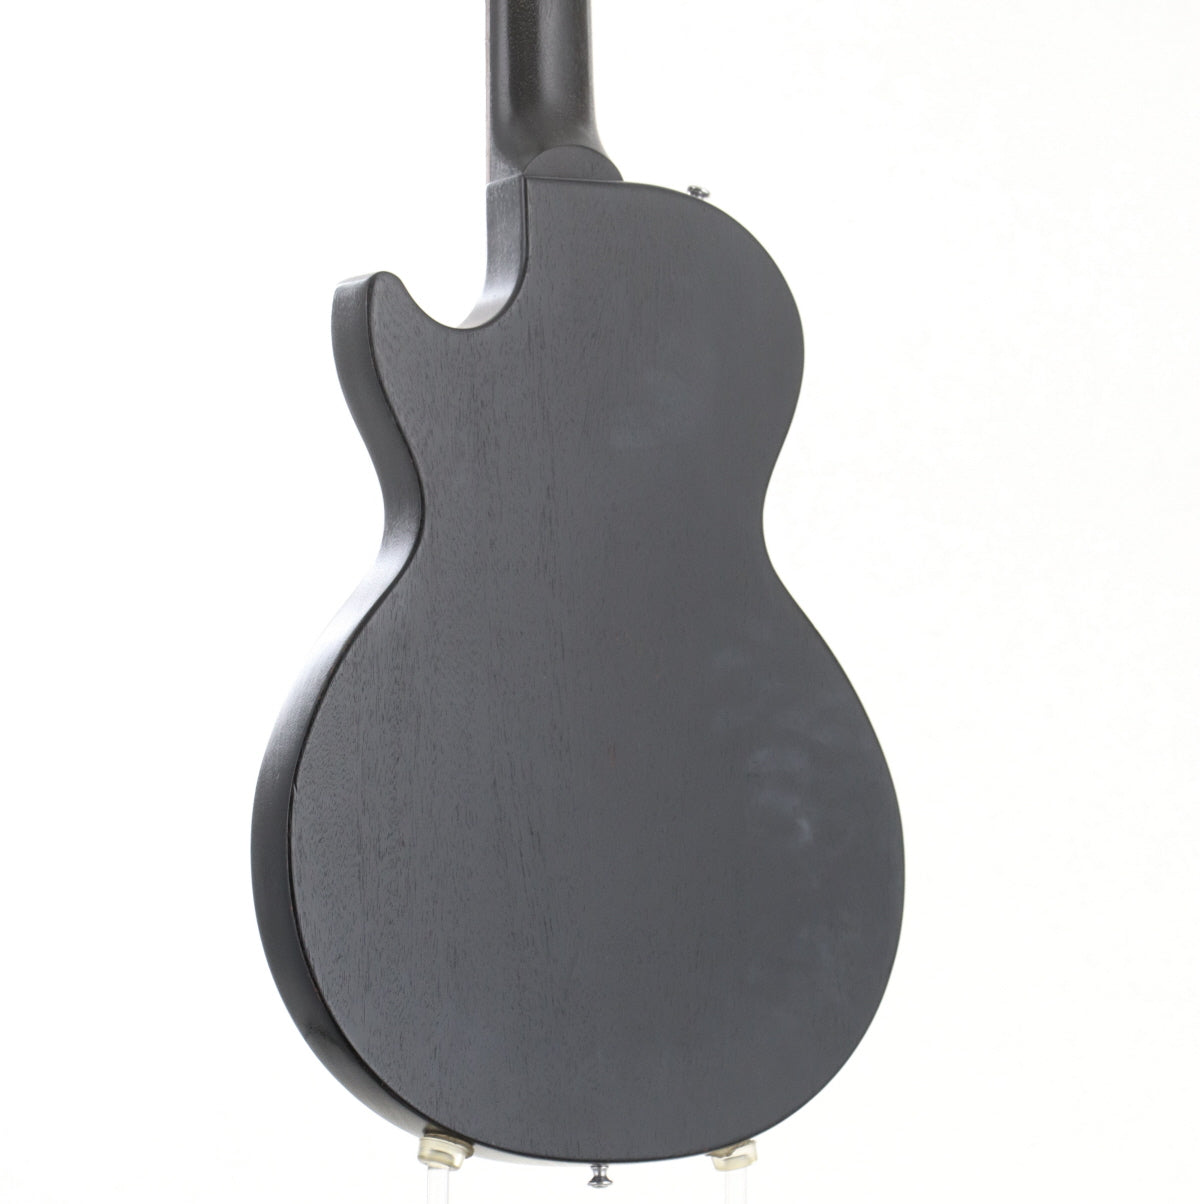 [SN 016971357] USED Gibson Usa / Melody Maker Satin Ebony [03]